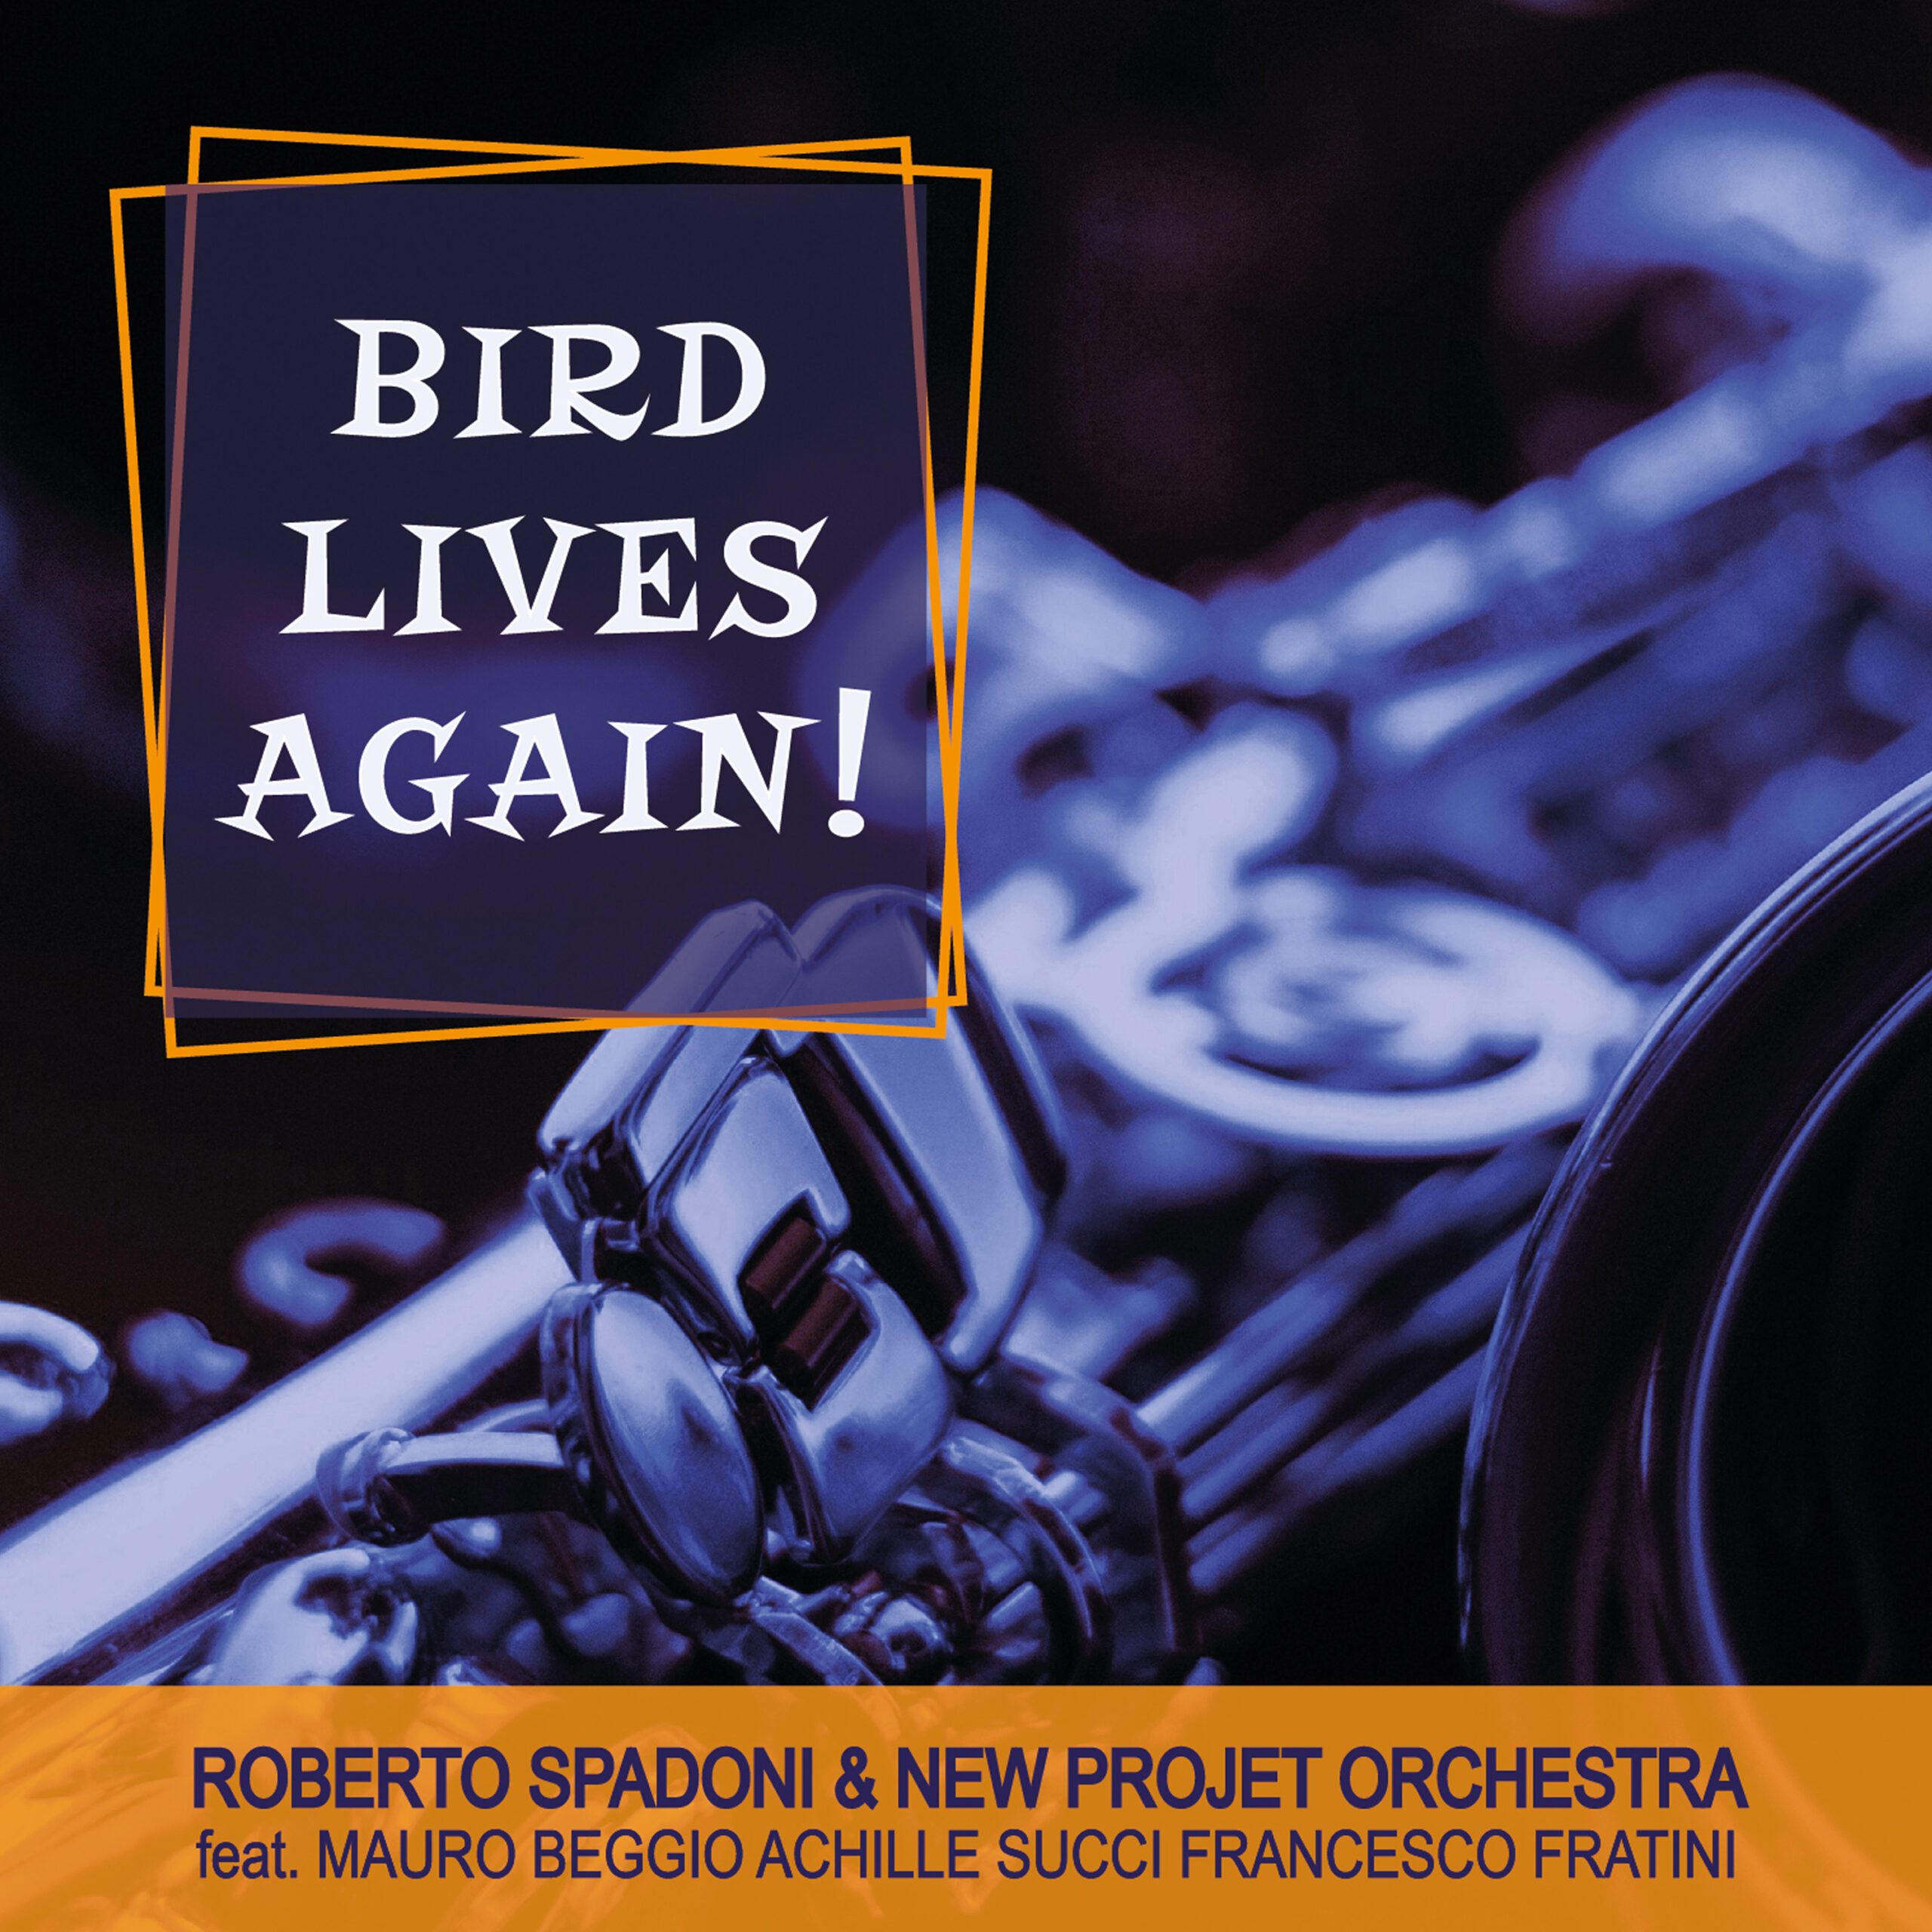 Scopri di più sull'articolo BIRD LIVES AGAIN! by New Project Orchestra & Roberto Spadoni